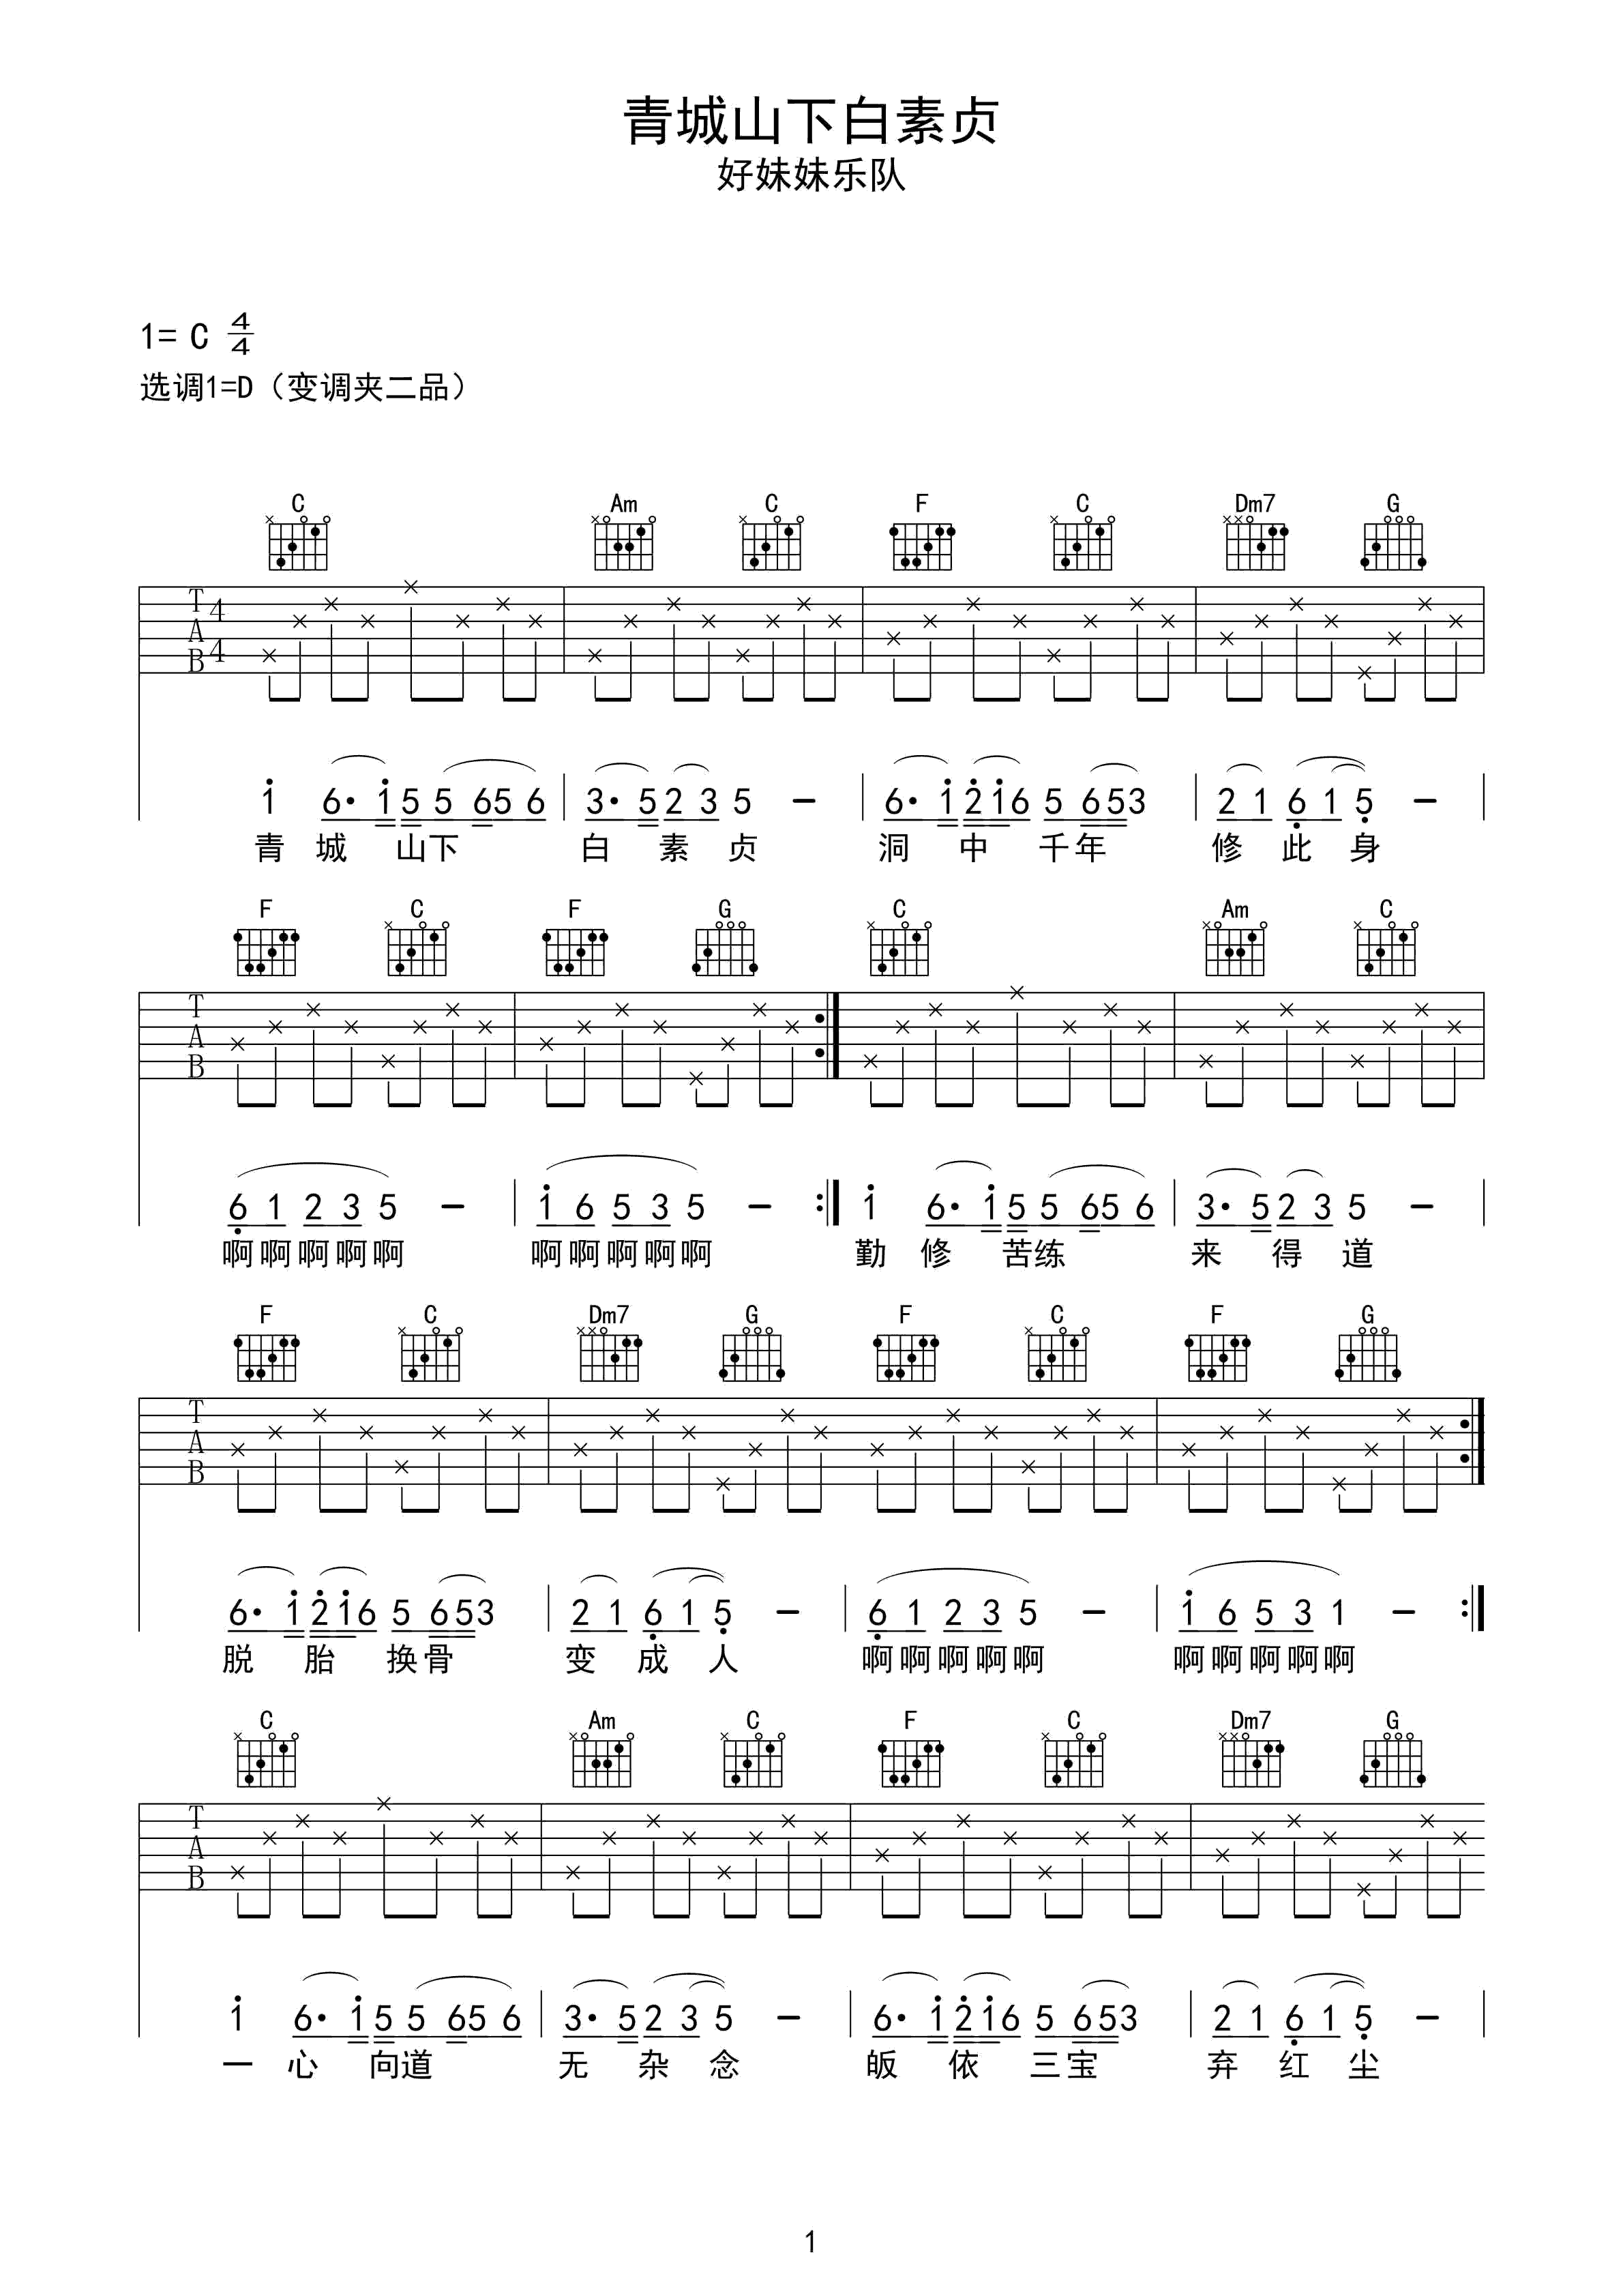 青城山下白素贞吉他谱 好妹妹乐队 歌如画,不减的童年回忆1